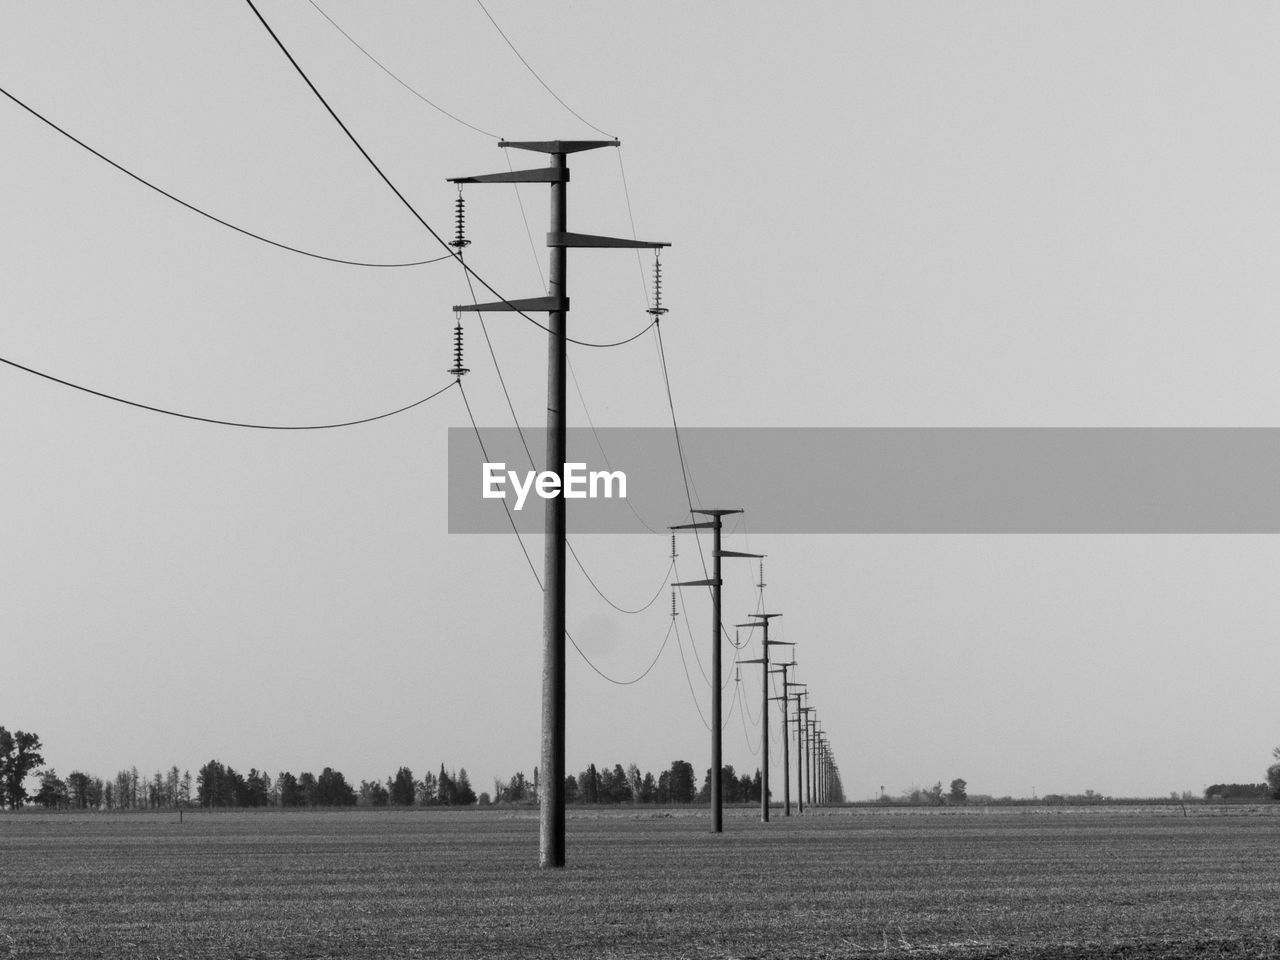 Electric power poles minimalist landscape